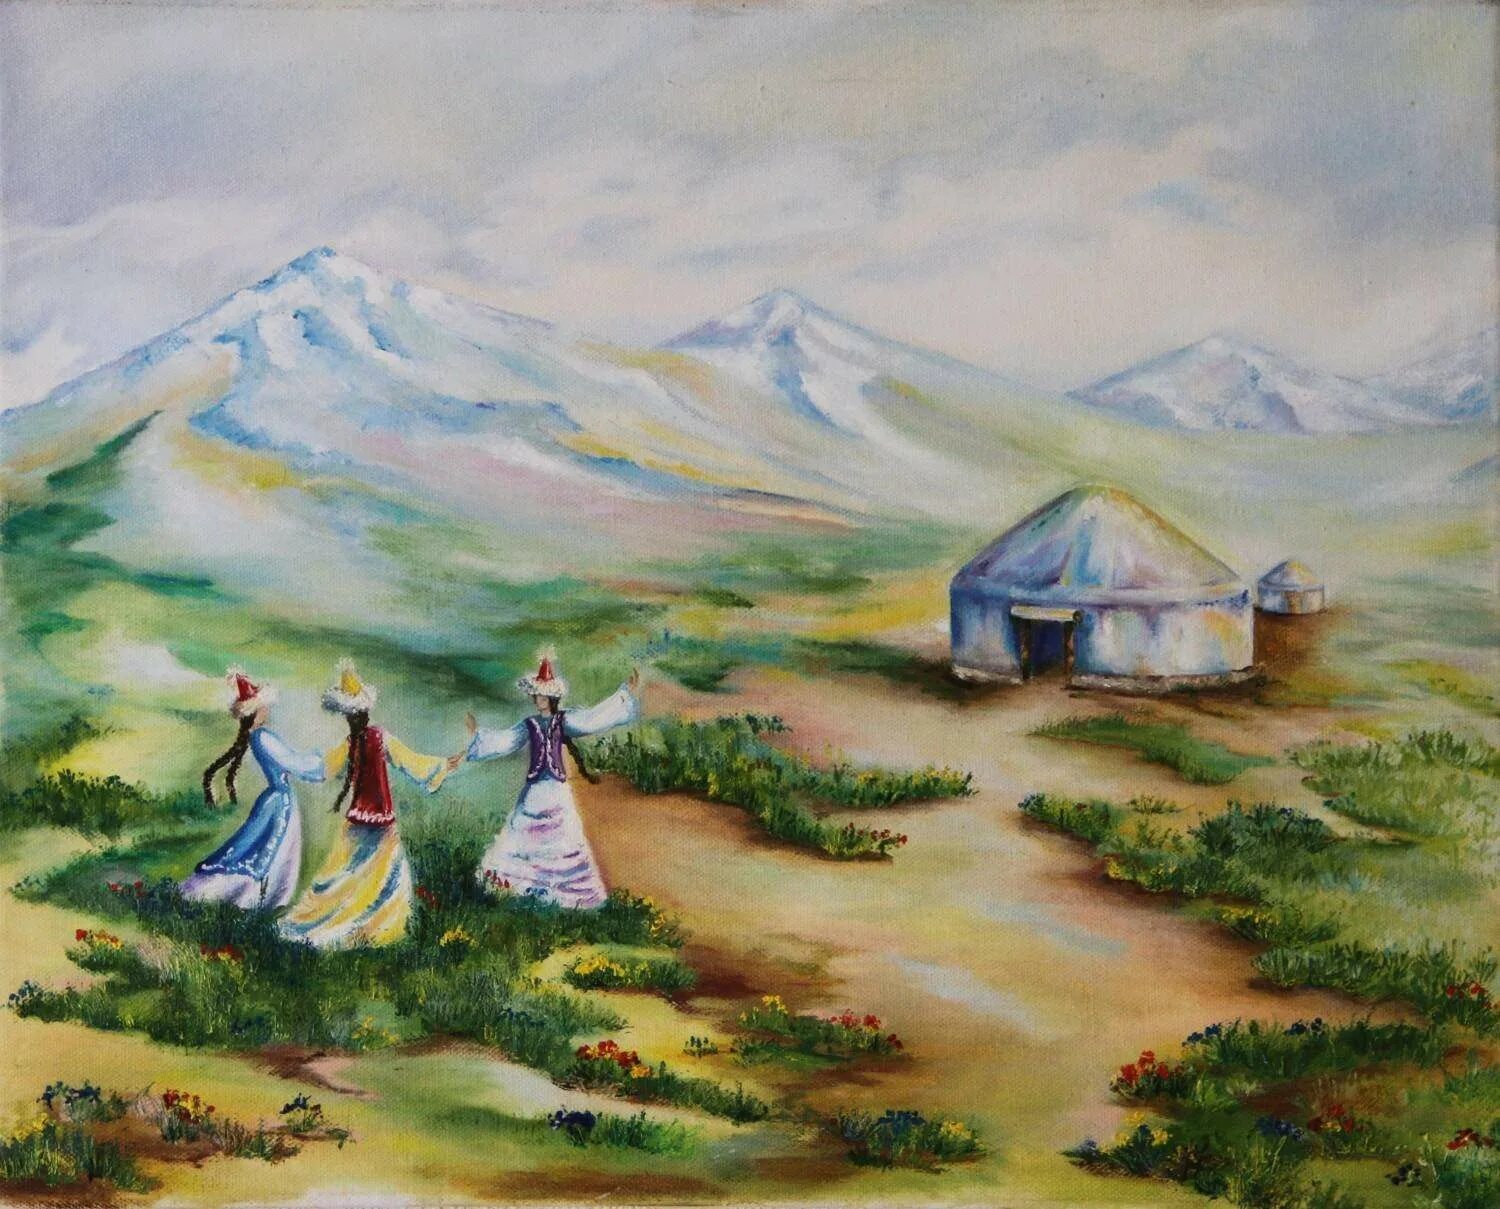 Юрта горы праздник Наурыз. Народы гор и степей. Казахский пейзаж. Картины казахских степей. Рисунок наурыз для детей